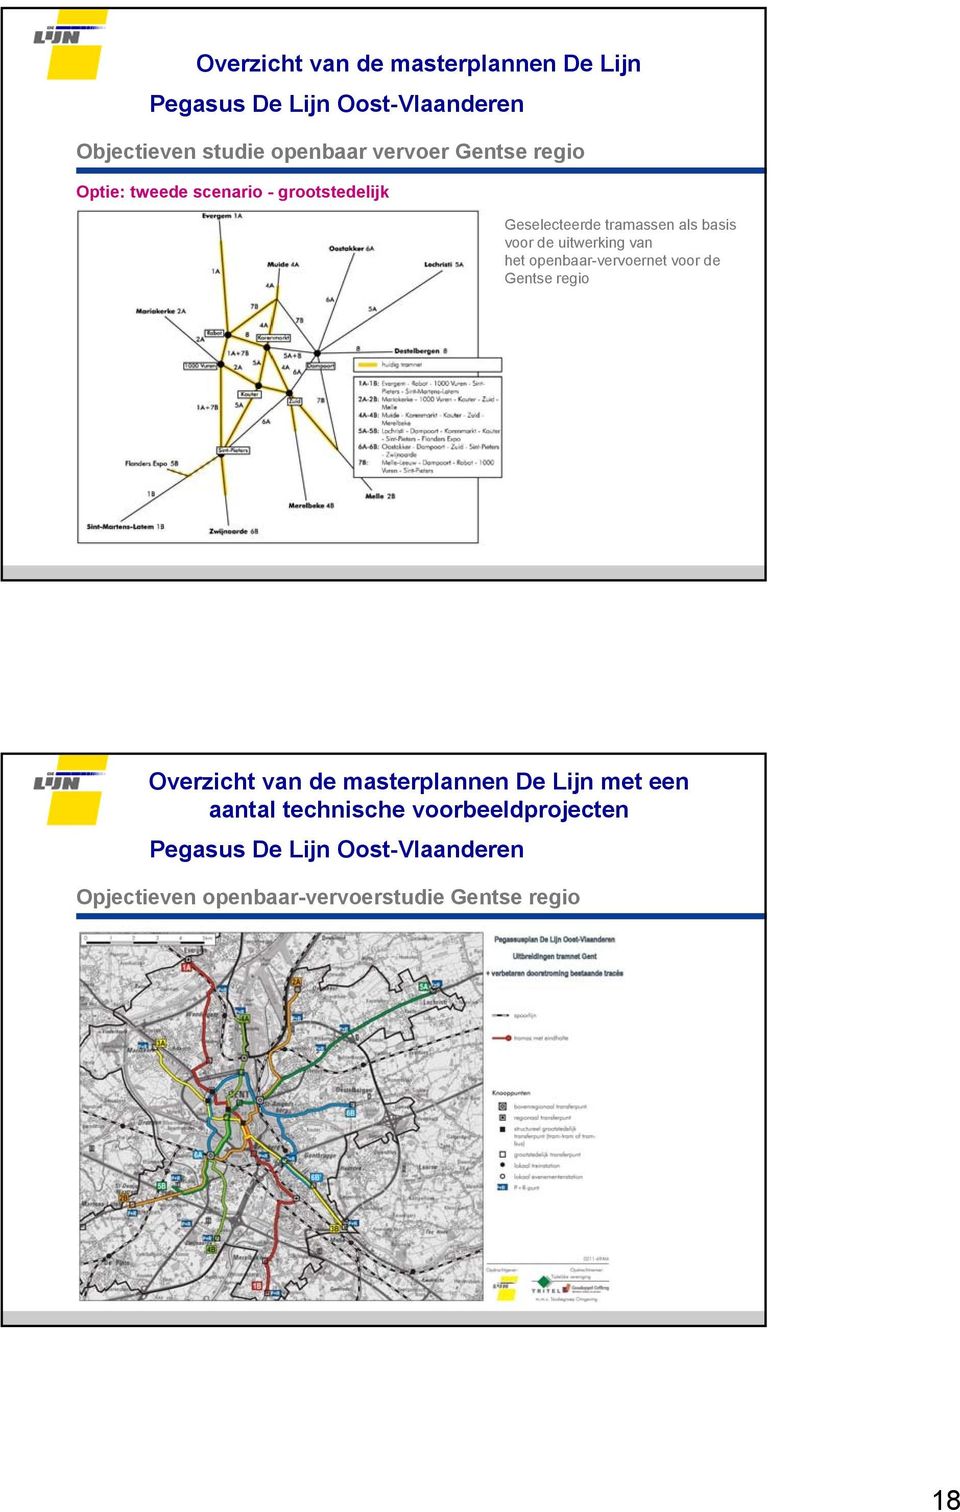 van het openbaar-vervoernet voor de Gentse regio met een aantal technische